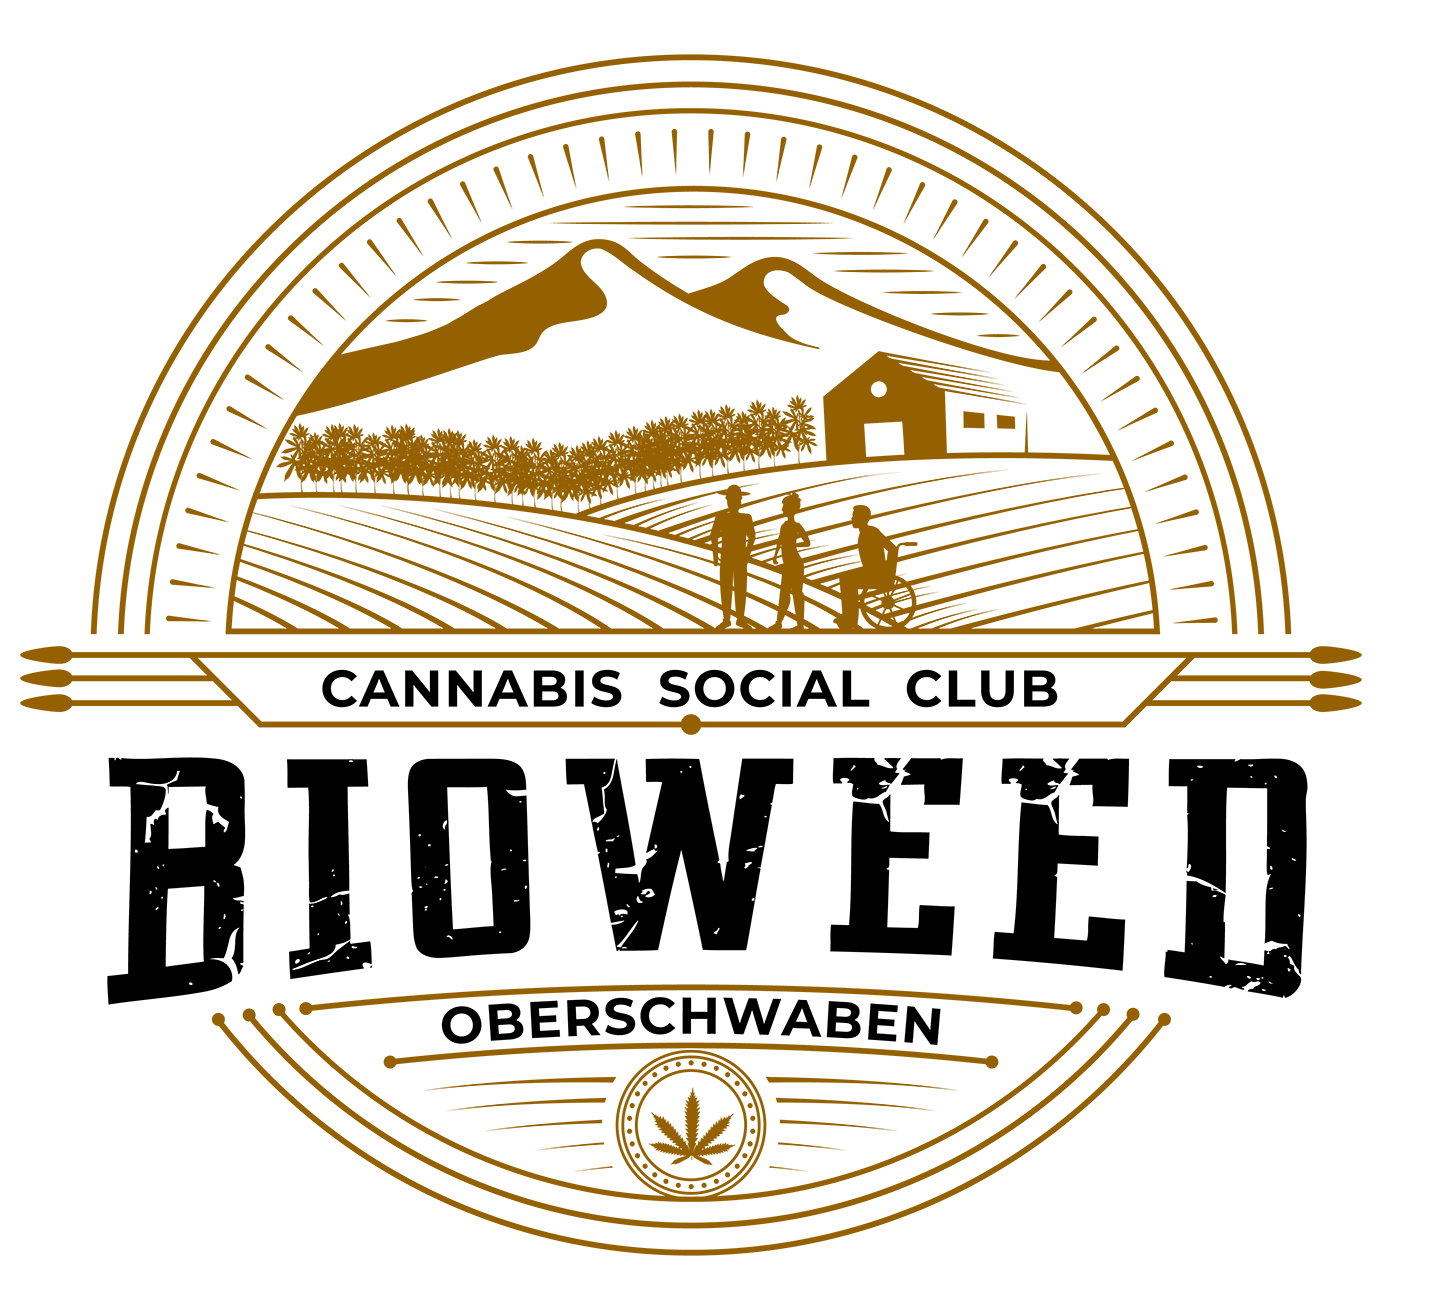 CSC "Bioweed" Oberschwaben